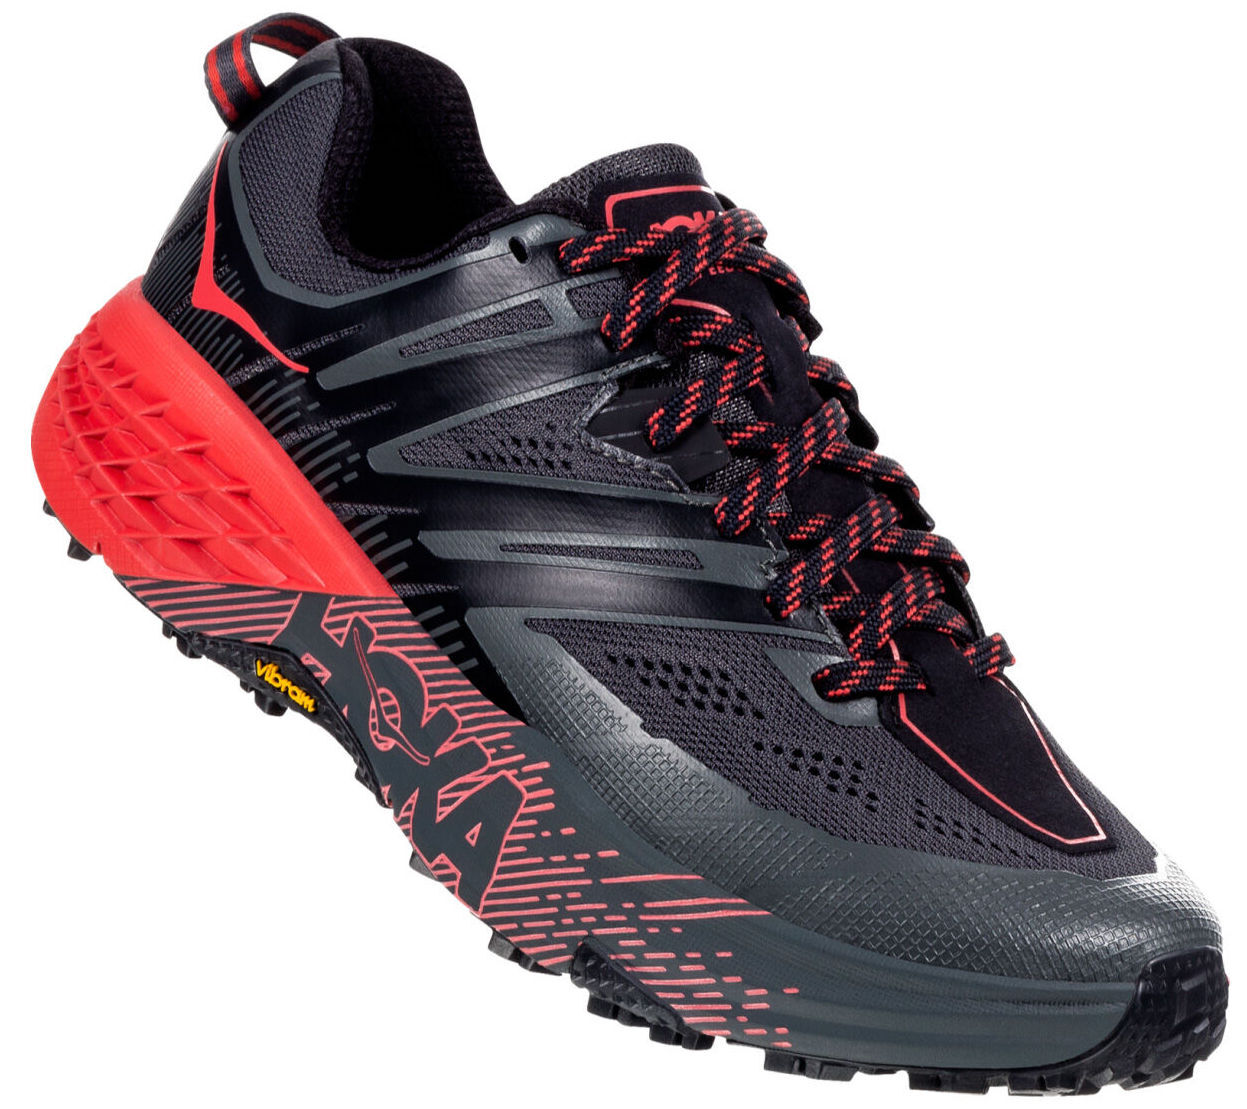 Hoka - Speedgoat 3 - Trail running shoes - Women's